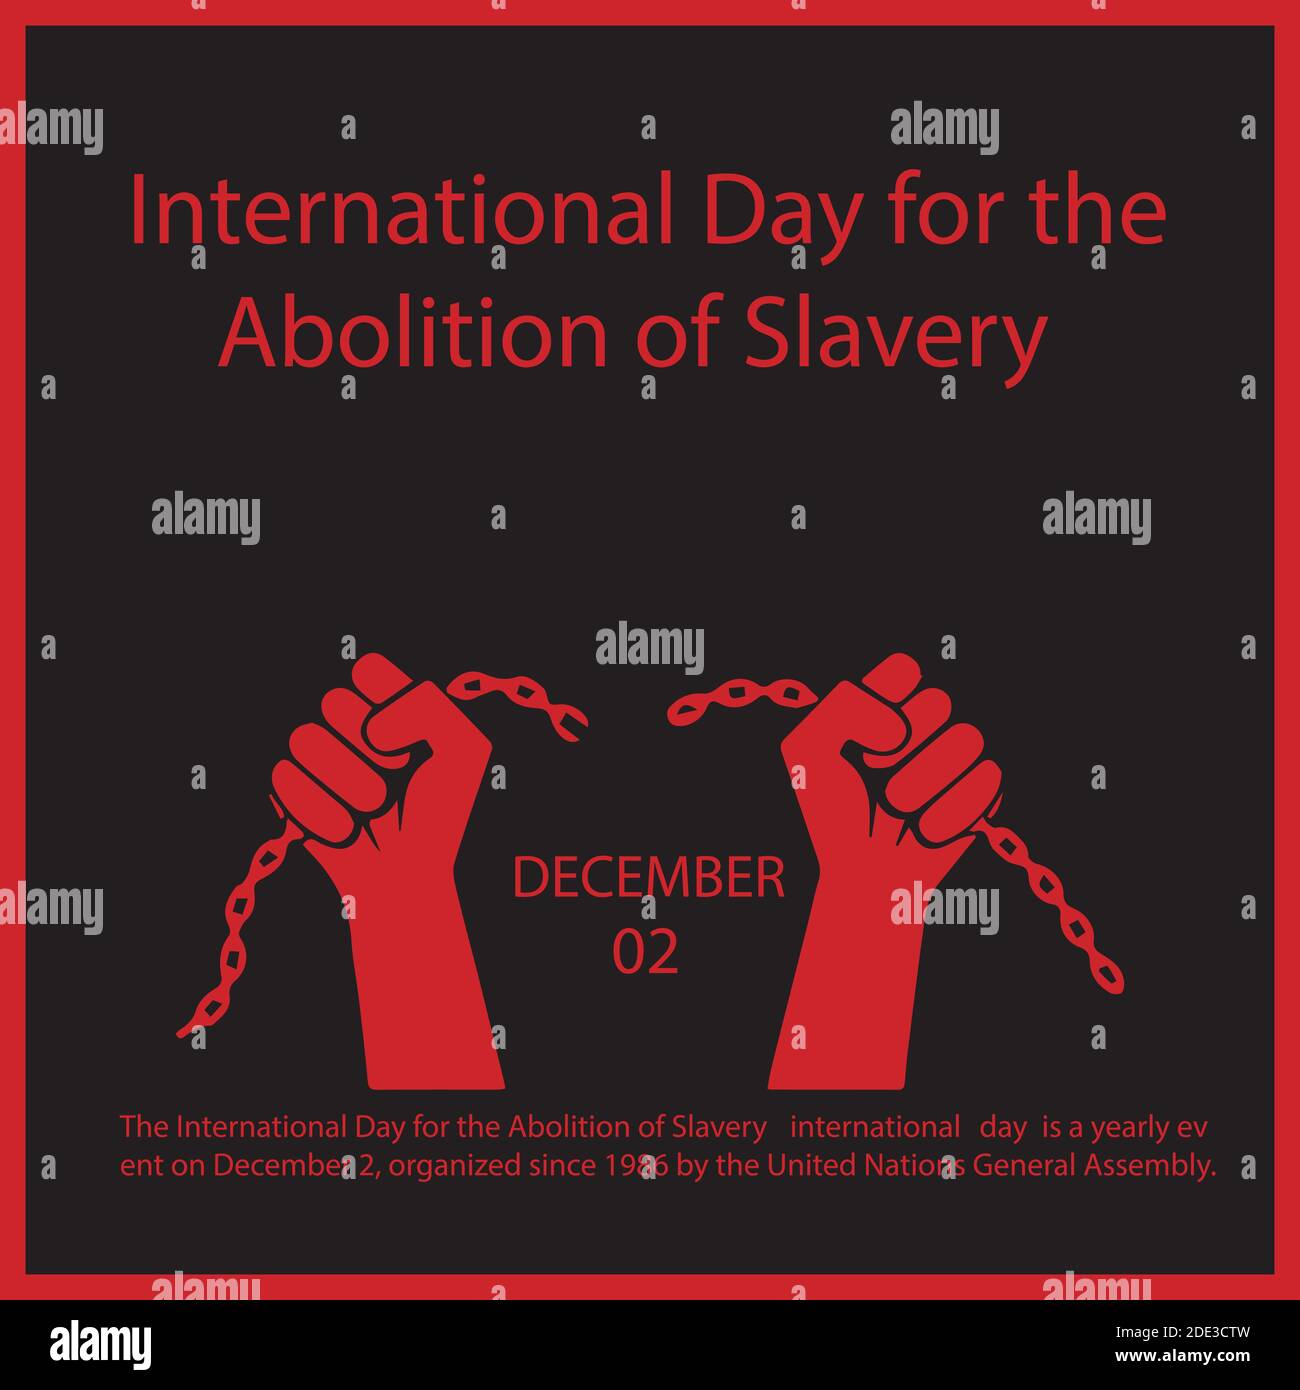 El día Internacional de la abolición de la Esclavitud es un evento anual el 2 de diciembre, organizado desde 1986 por el Gener de las Naciones Unidas Ilustración del Vector